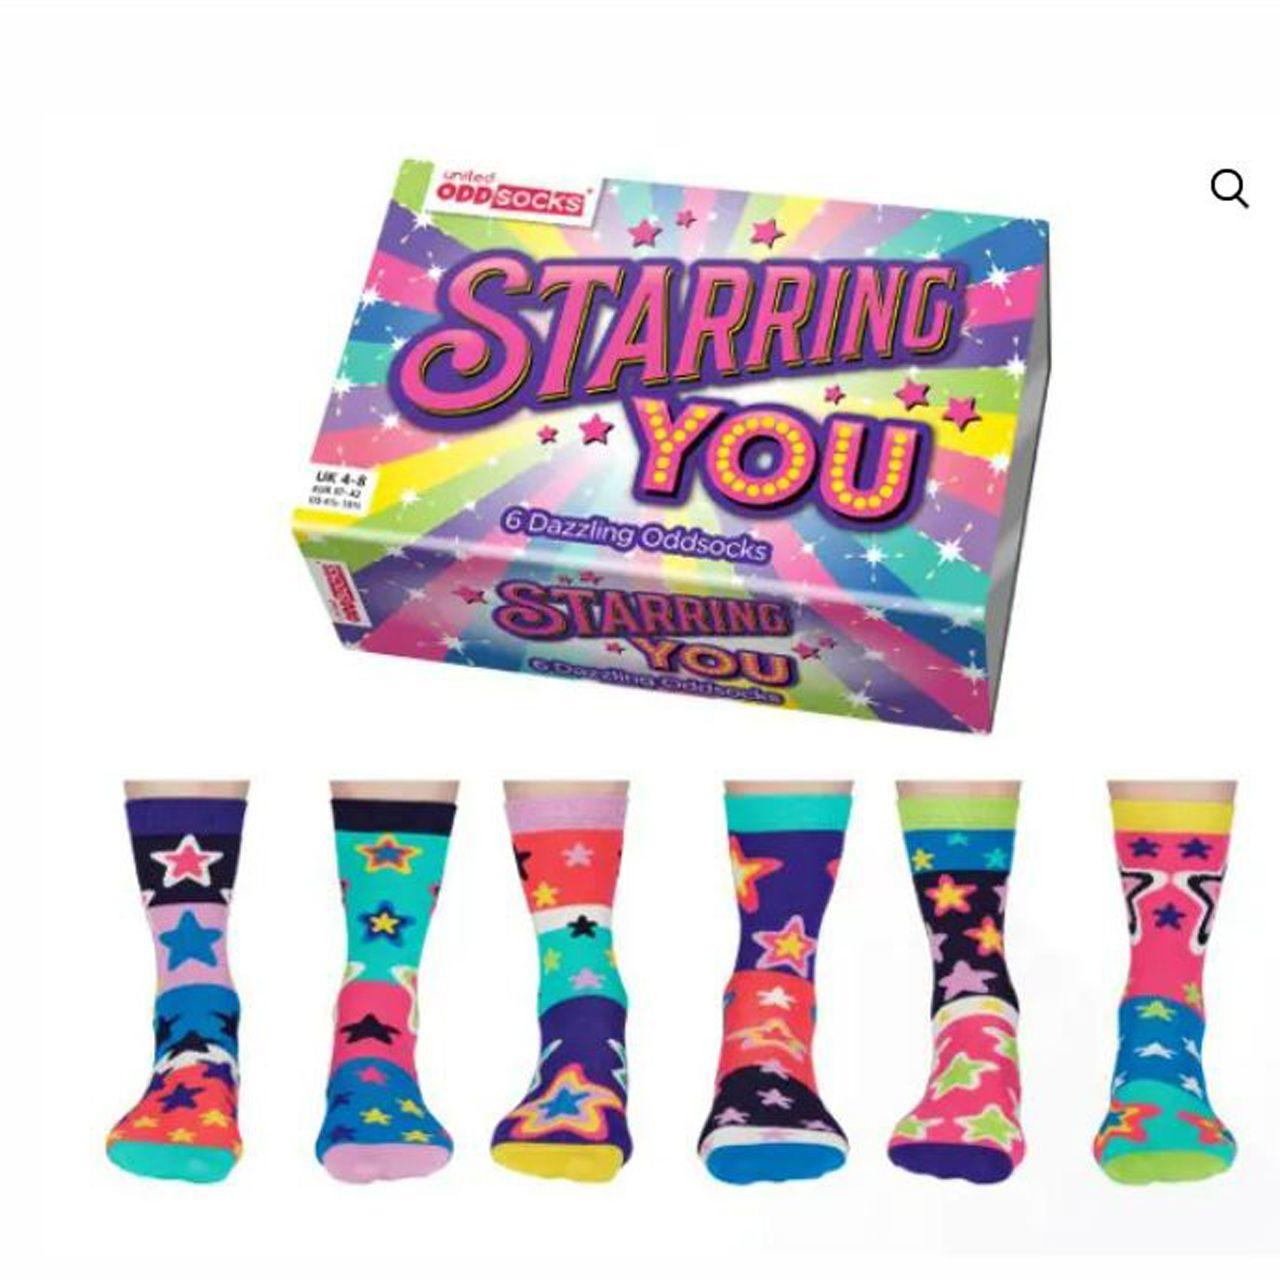 Socks in a Box -  Starring You